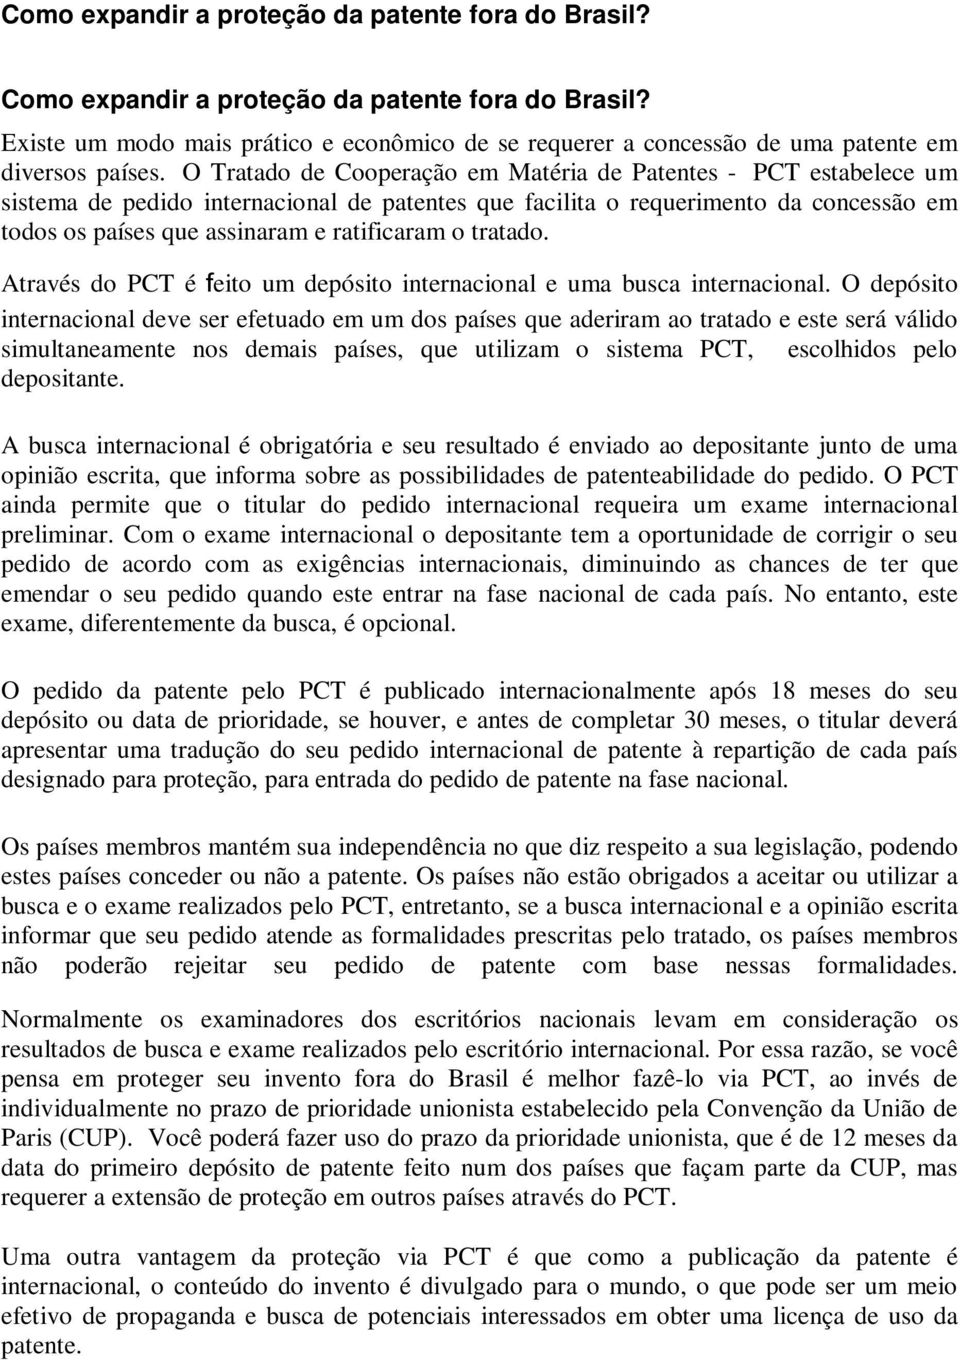 O Tratado de Cooperação em Matéria de Patentes - PCT estabelece um sistema de pedido internacional de patentes que facilita o requerimento da concessão em todos os países que assinaram e ratificaram